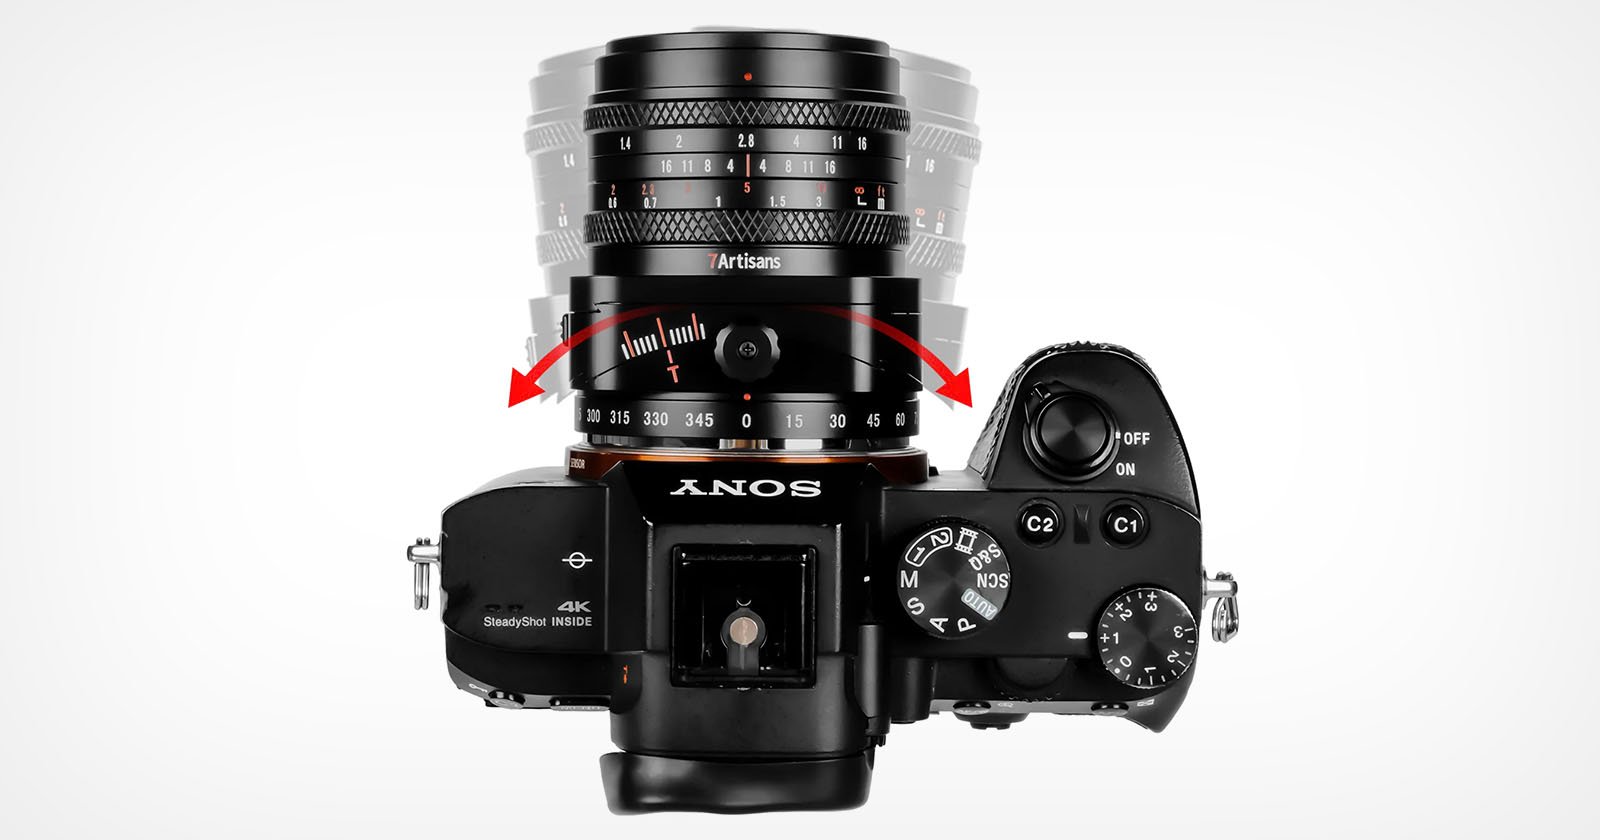 7Artisans 50mm f/1.4 Tilt lens for APS-C mirrorless cameras